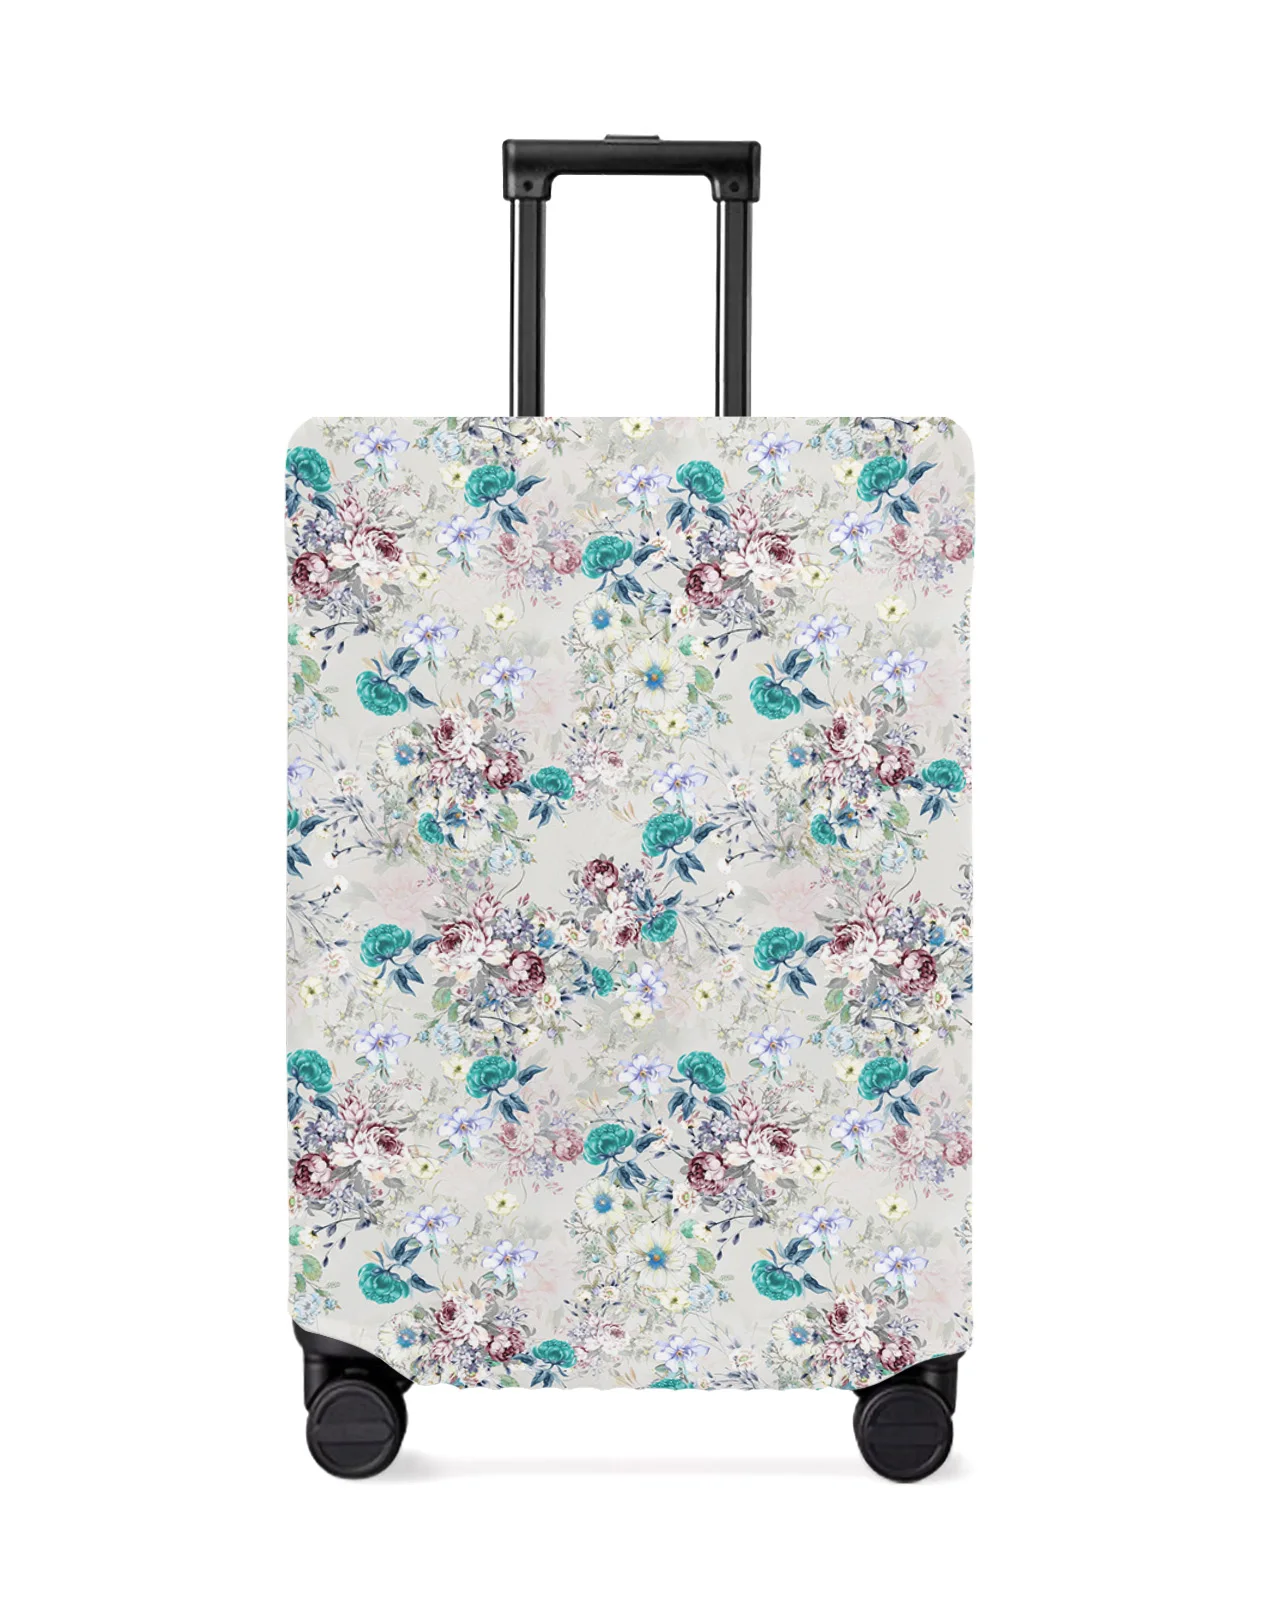 cubierta-de-equipaje-abstracta-vintage-flower-leaf-protector-de-maleta-elastico-cubierta-antipolvo-para-maleta-de-viaje-de-18-32-pulgadas